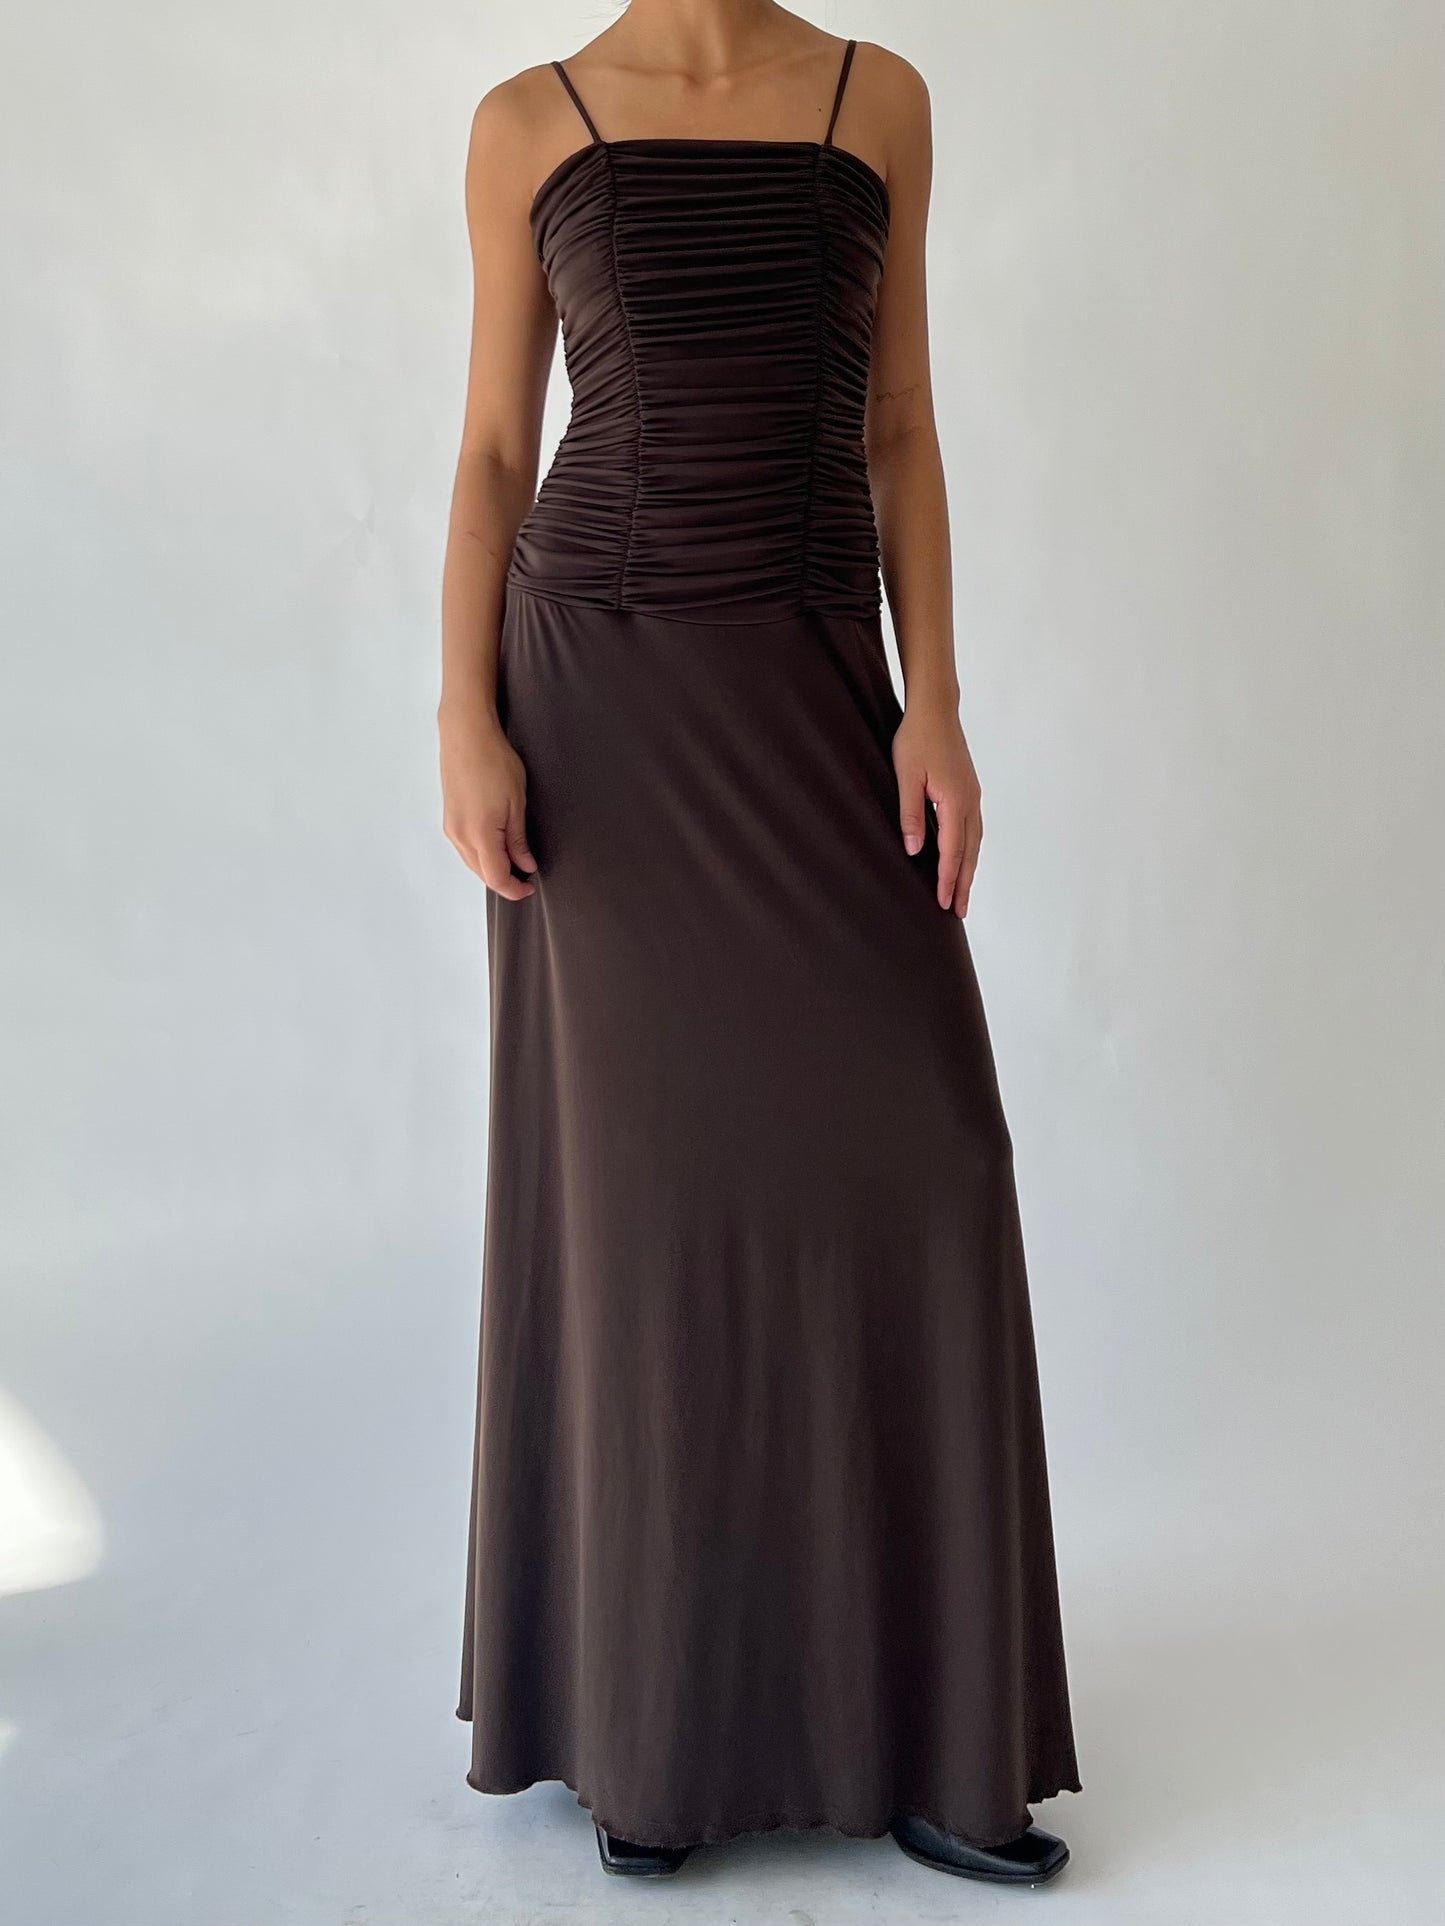 90s brown maxi dress